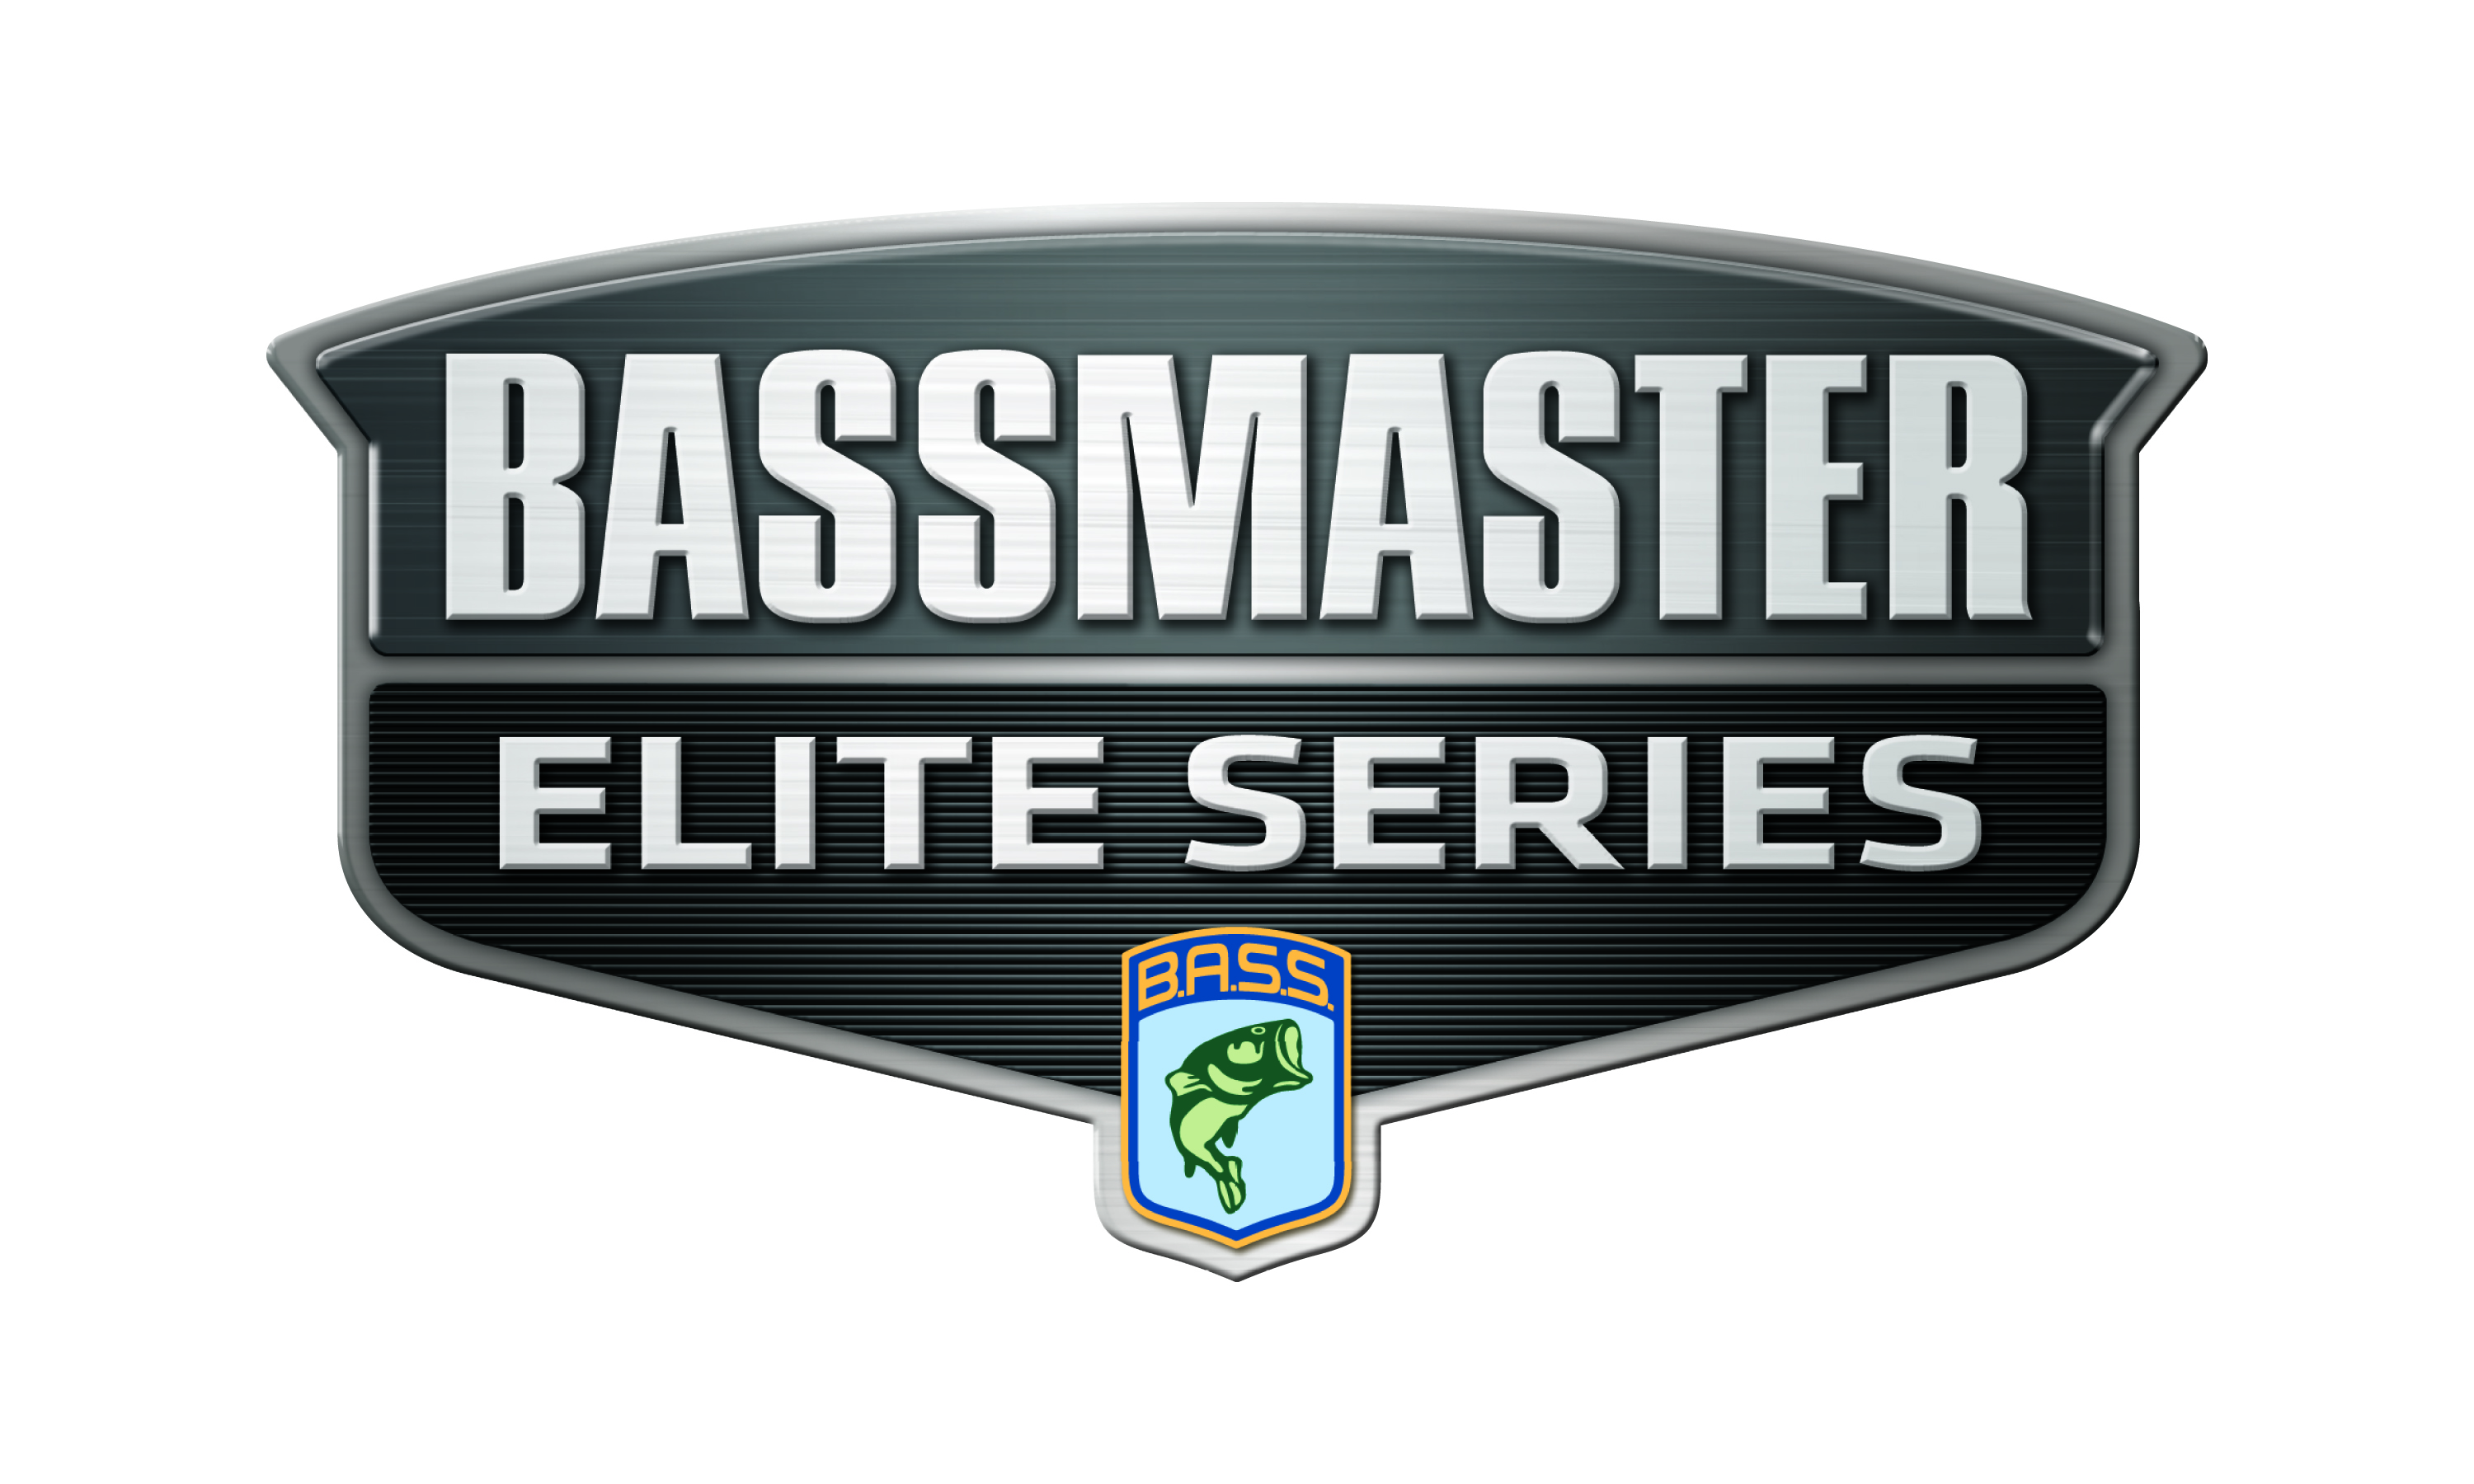 Carhartt's brand history - Bassmaster